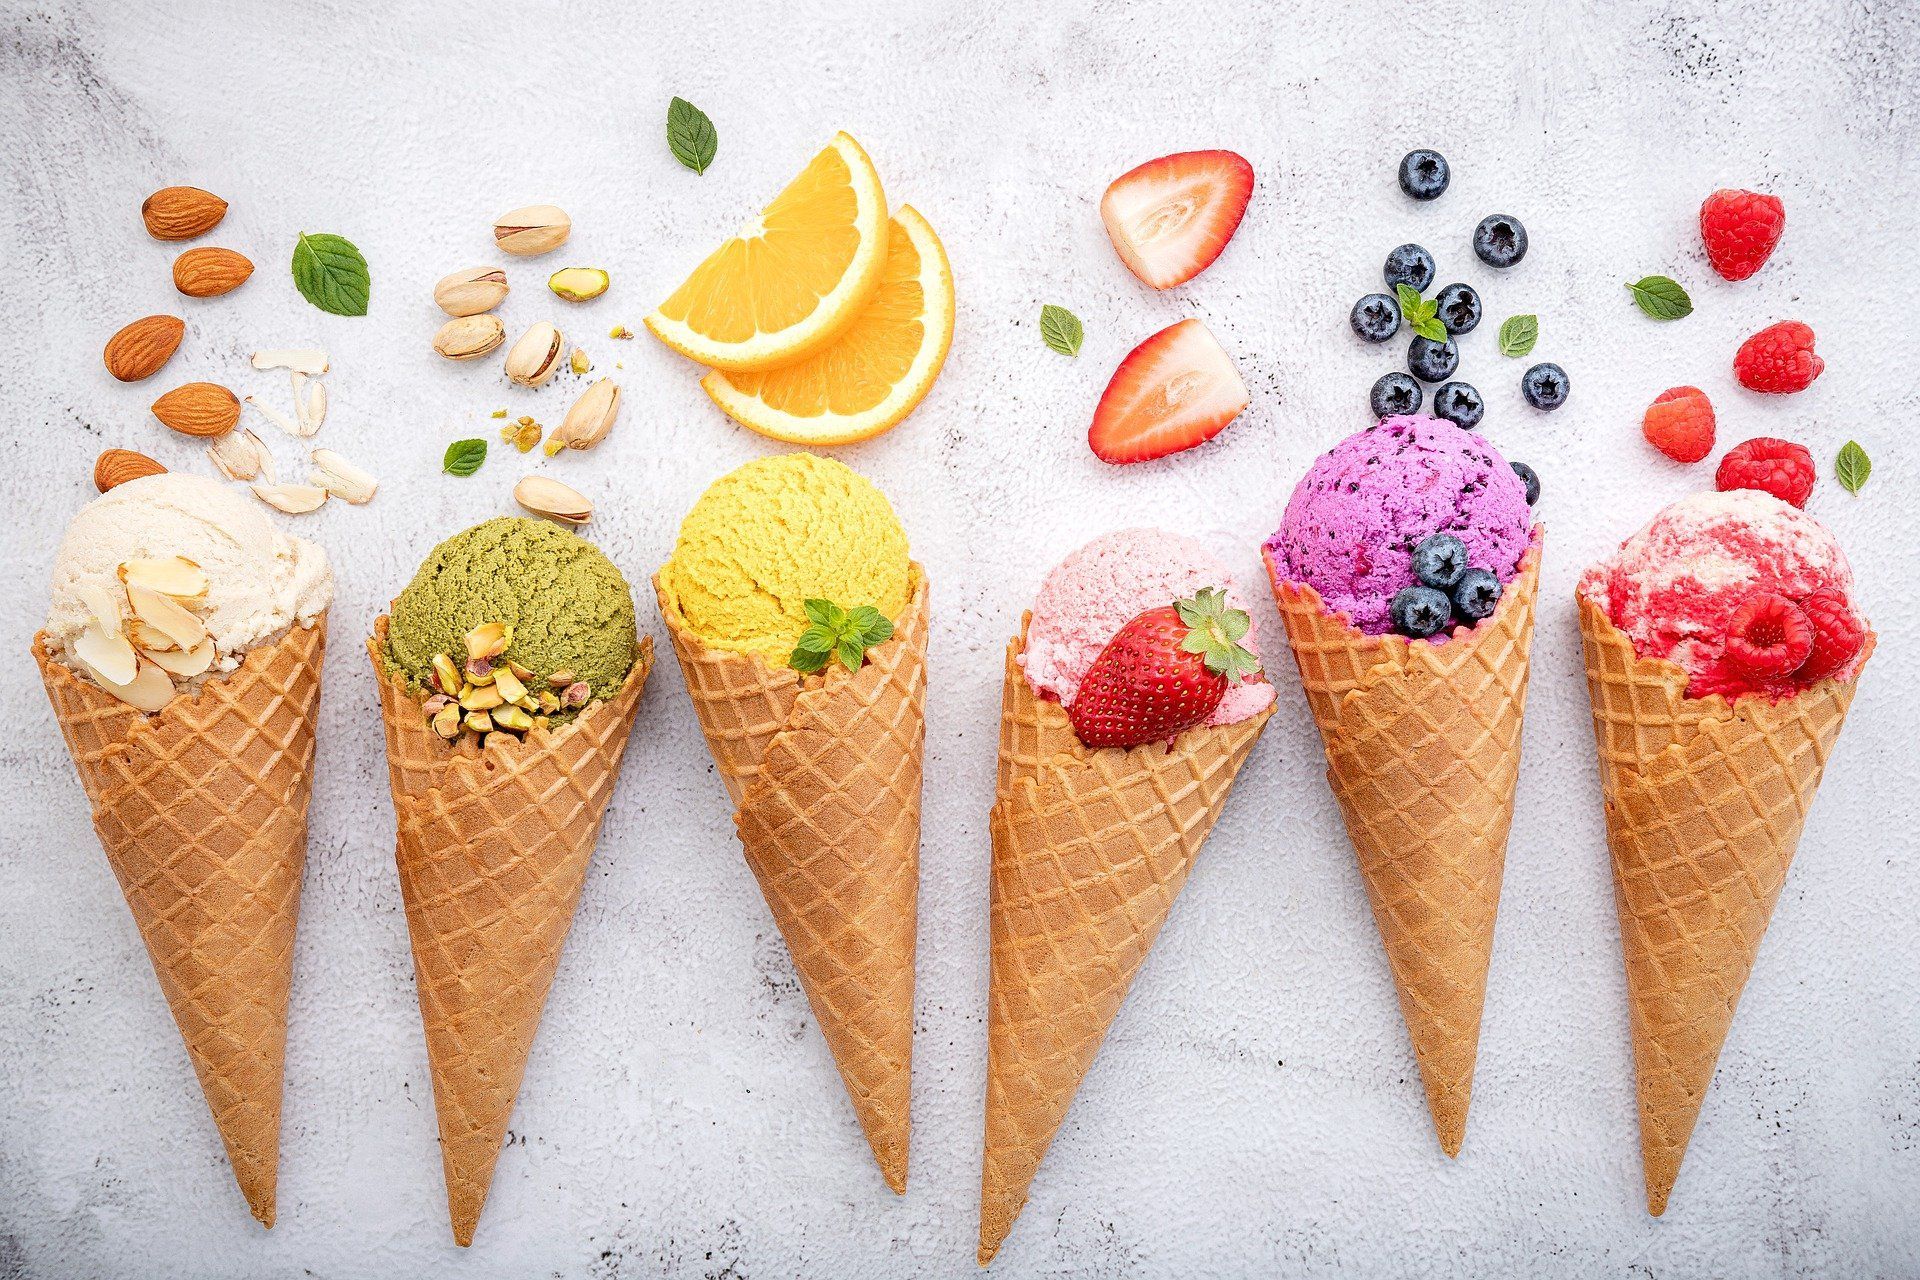 Правильный состав и хорошие «Е-шки»: как выбрать качественное мороженое |  Вслух.ru